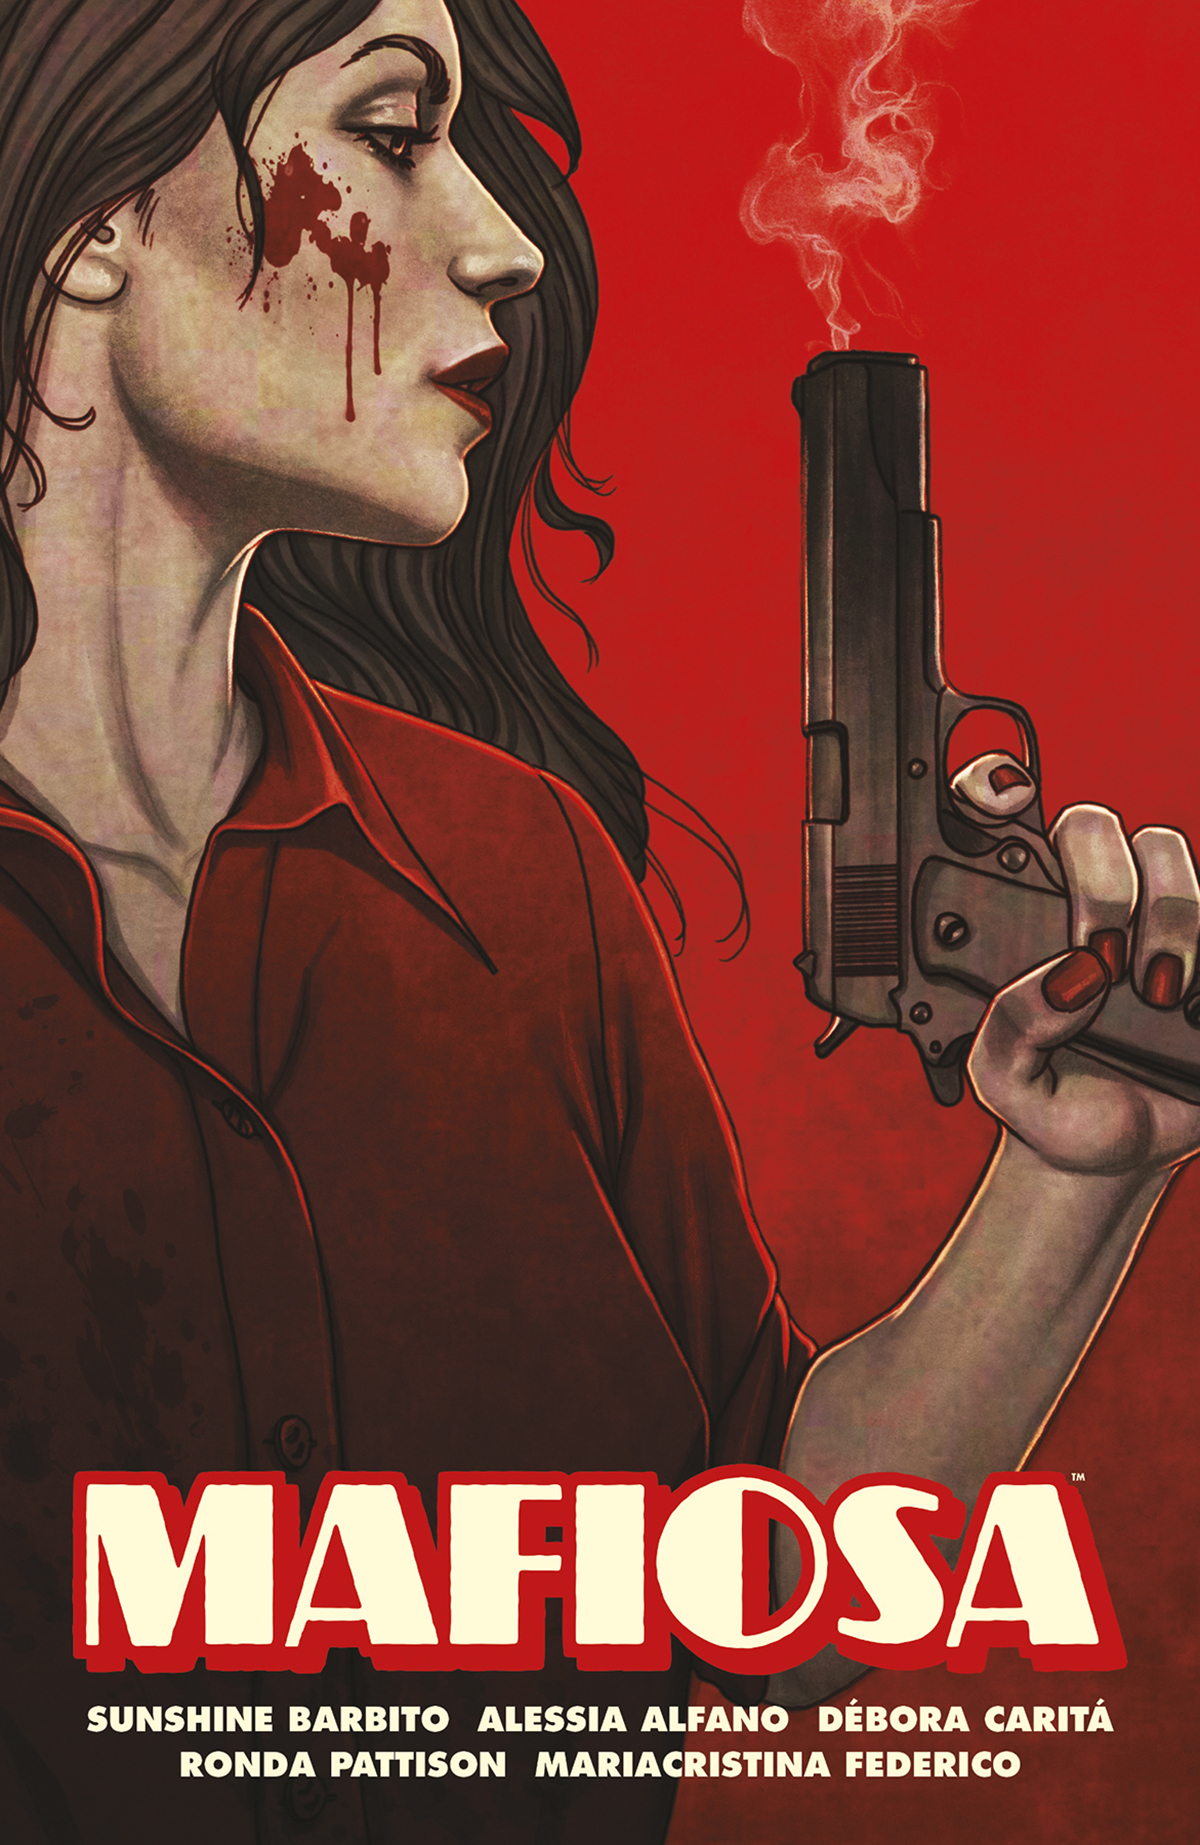 Mafiosa Graphic Novel